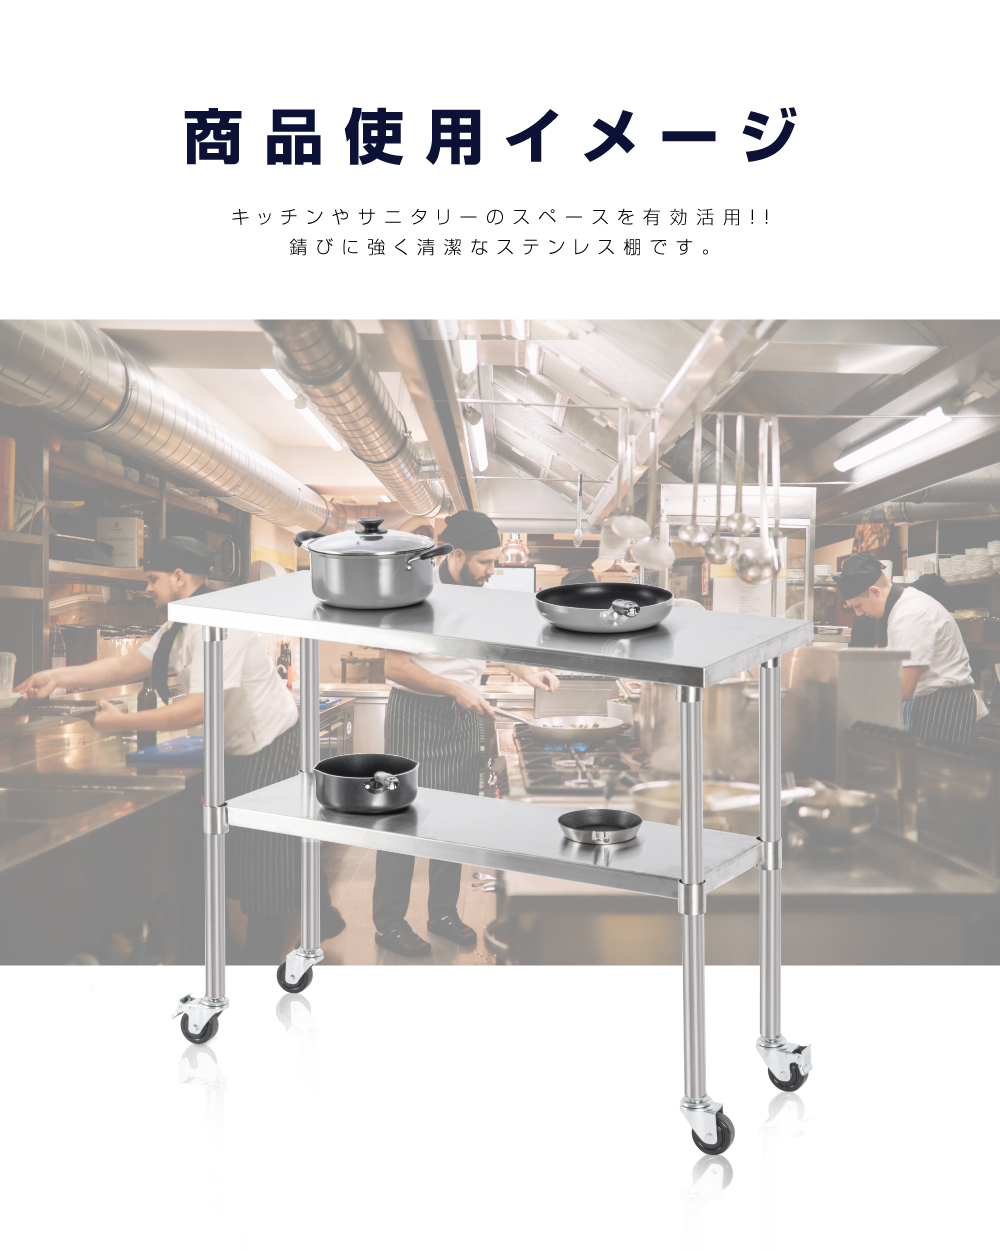 日本製 ステンレス 作業台 キャスター付き 調理台 W1000mm×H800×D600mm ステンレス調理台 調理 厨房作業台 テーブル キッチン作業台 送料無料 kot2ca-10060 - 0